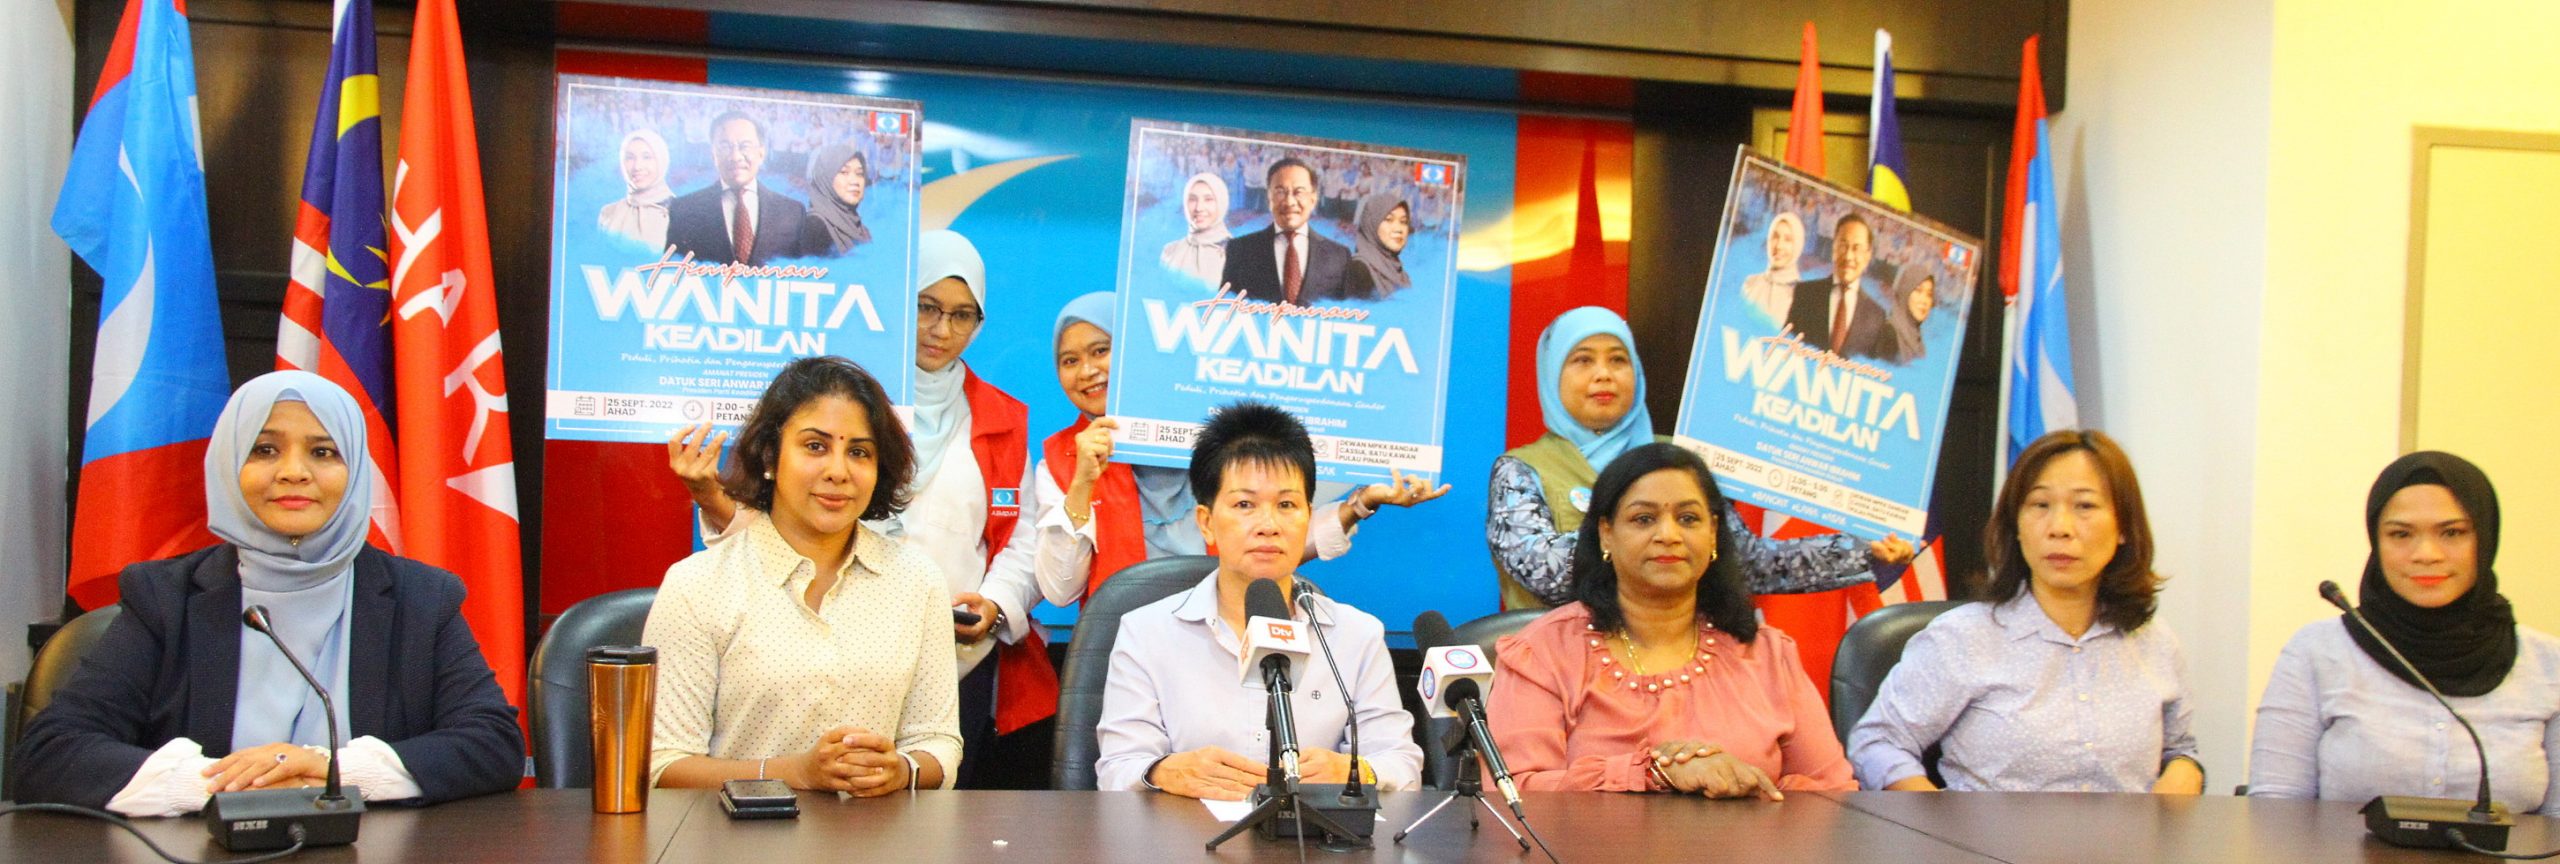 9月25日在槟城举行公正党妇女组大会